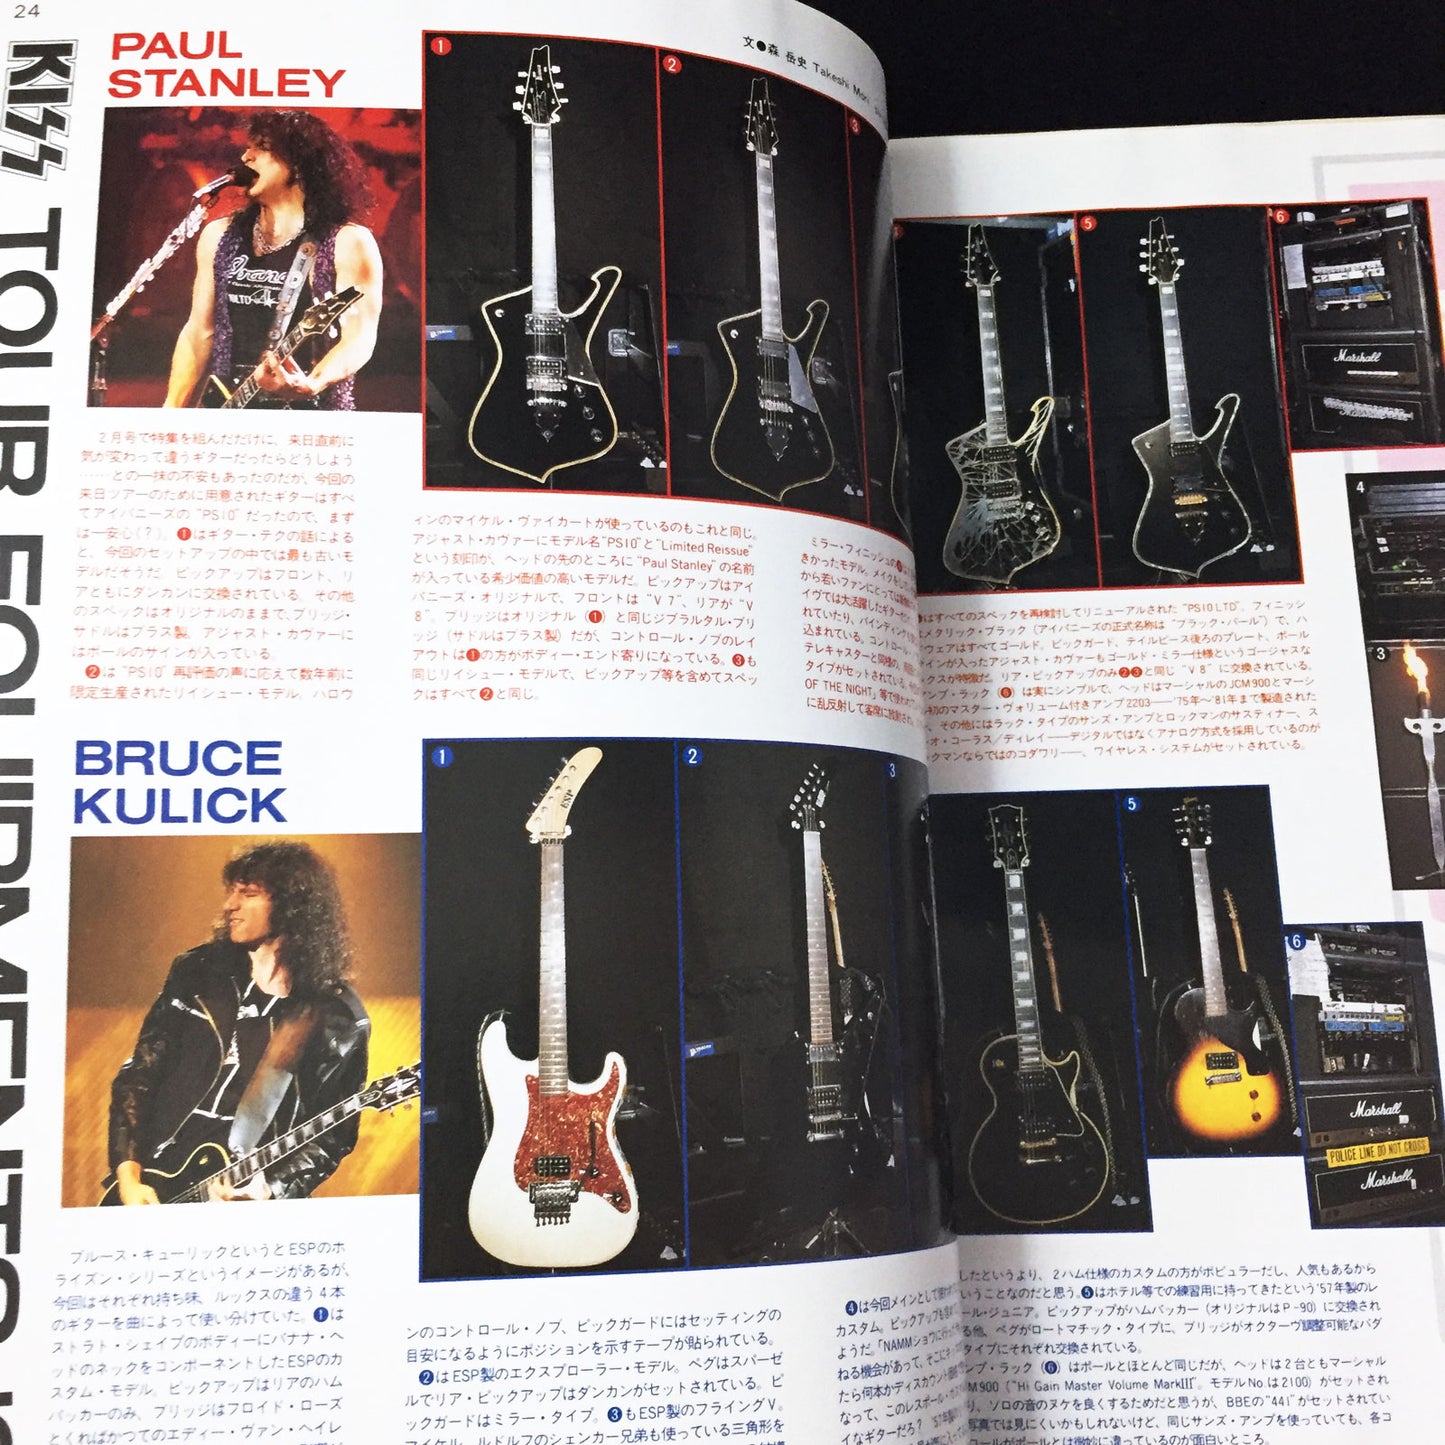 Young Guitar Magazine April 1995